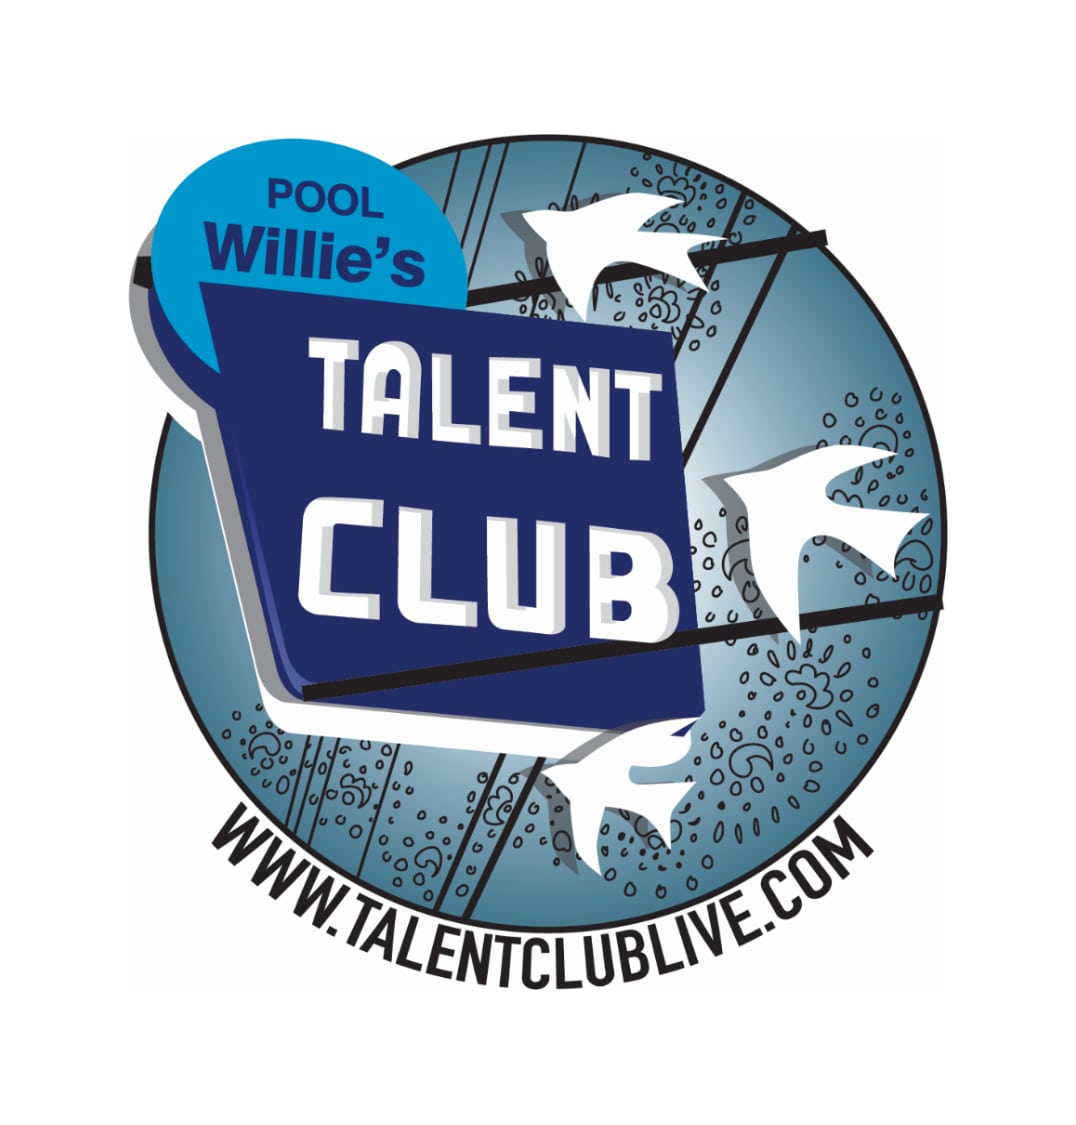 The Talent Club